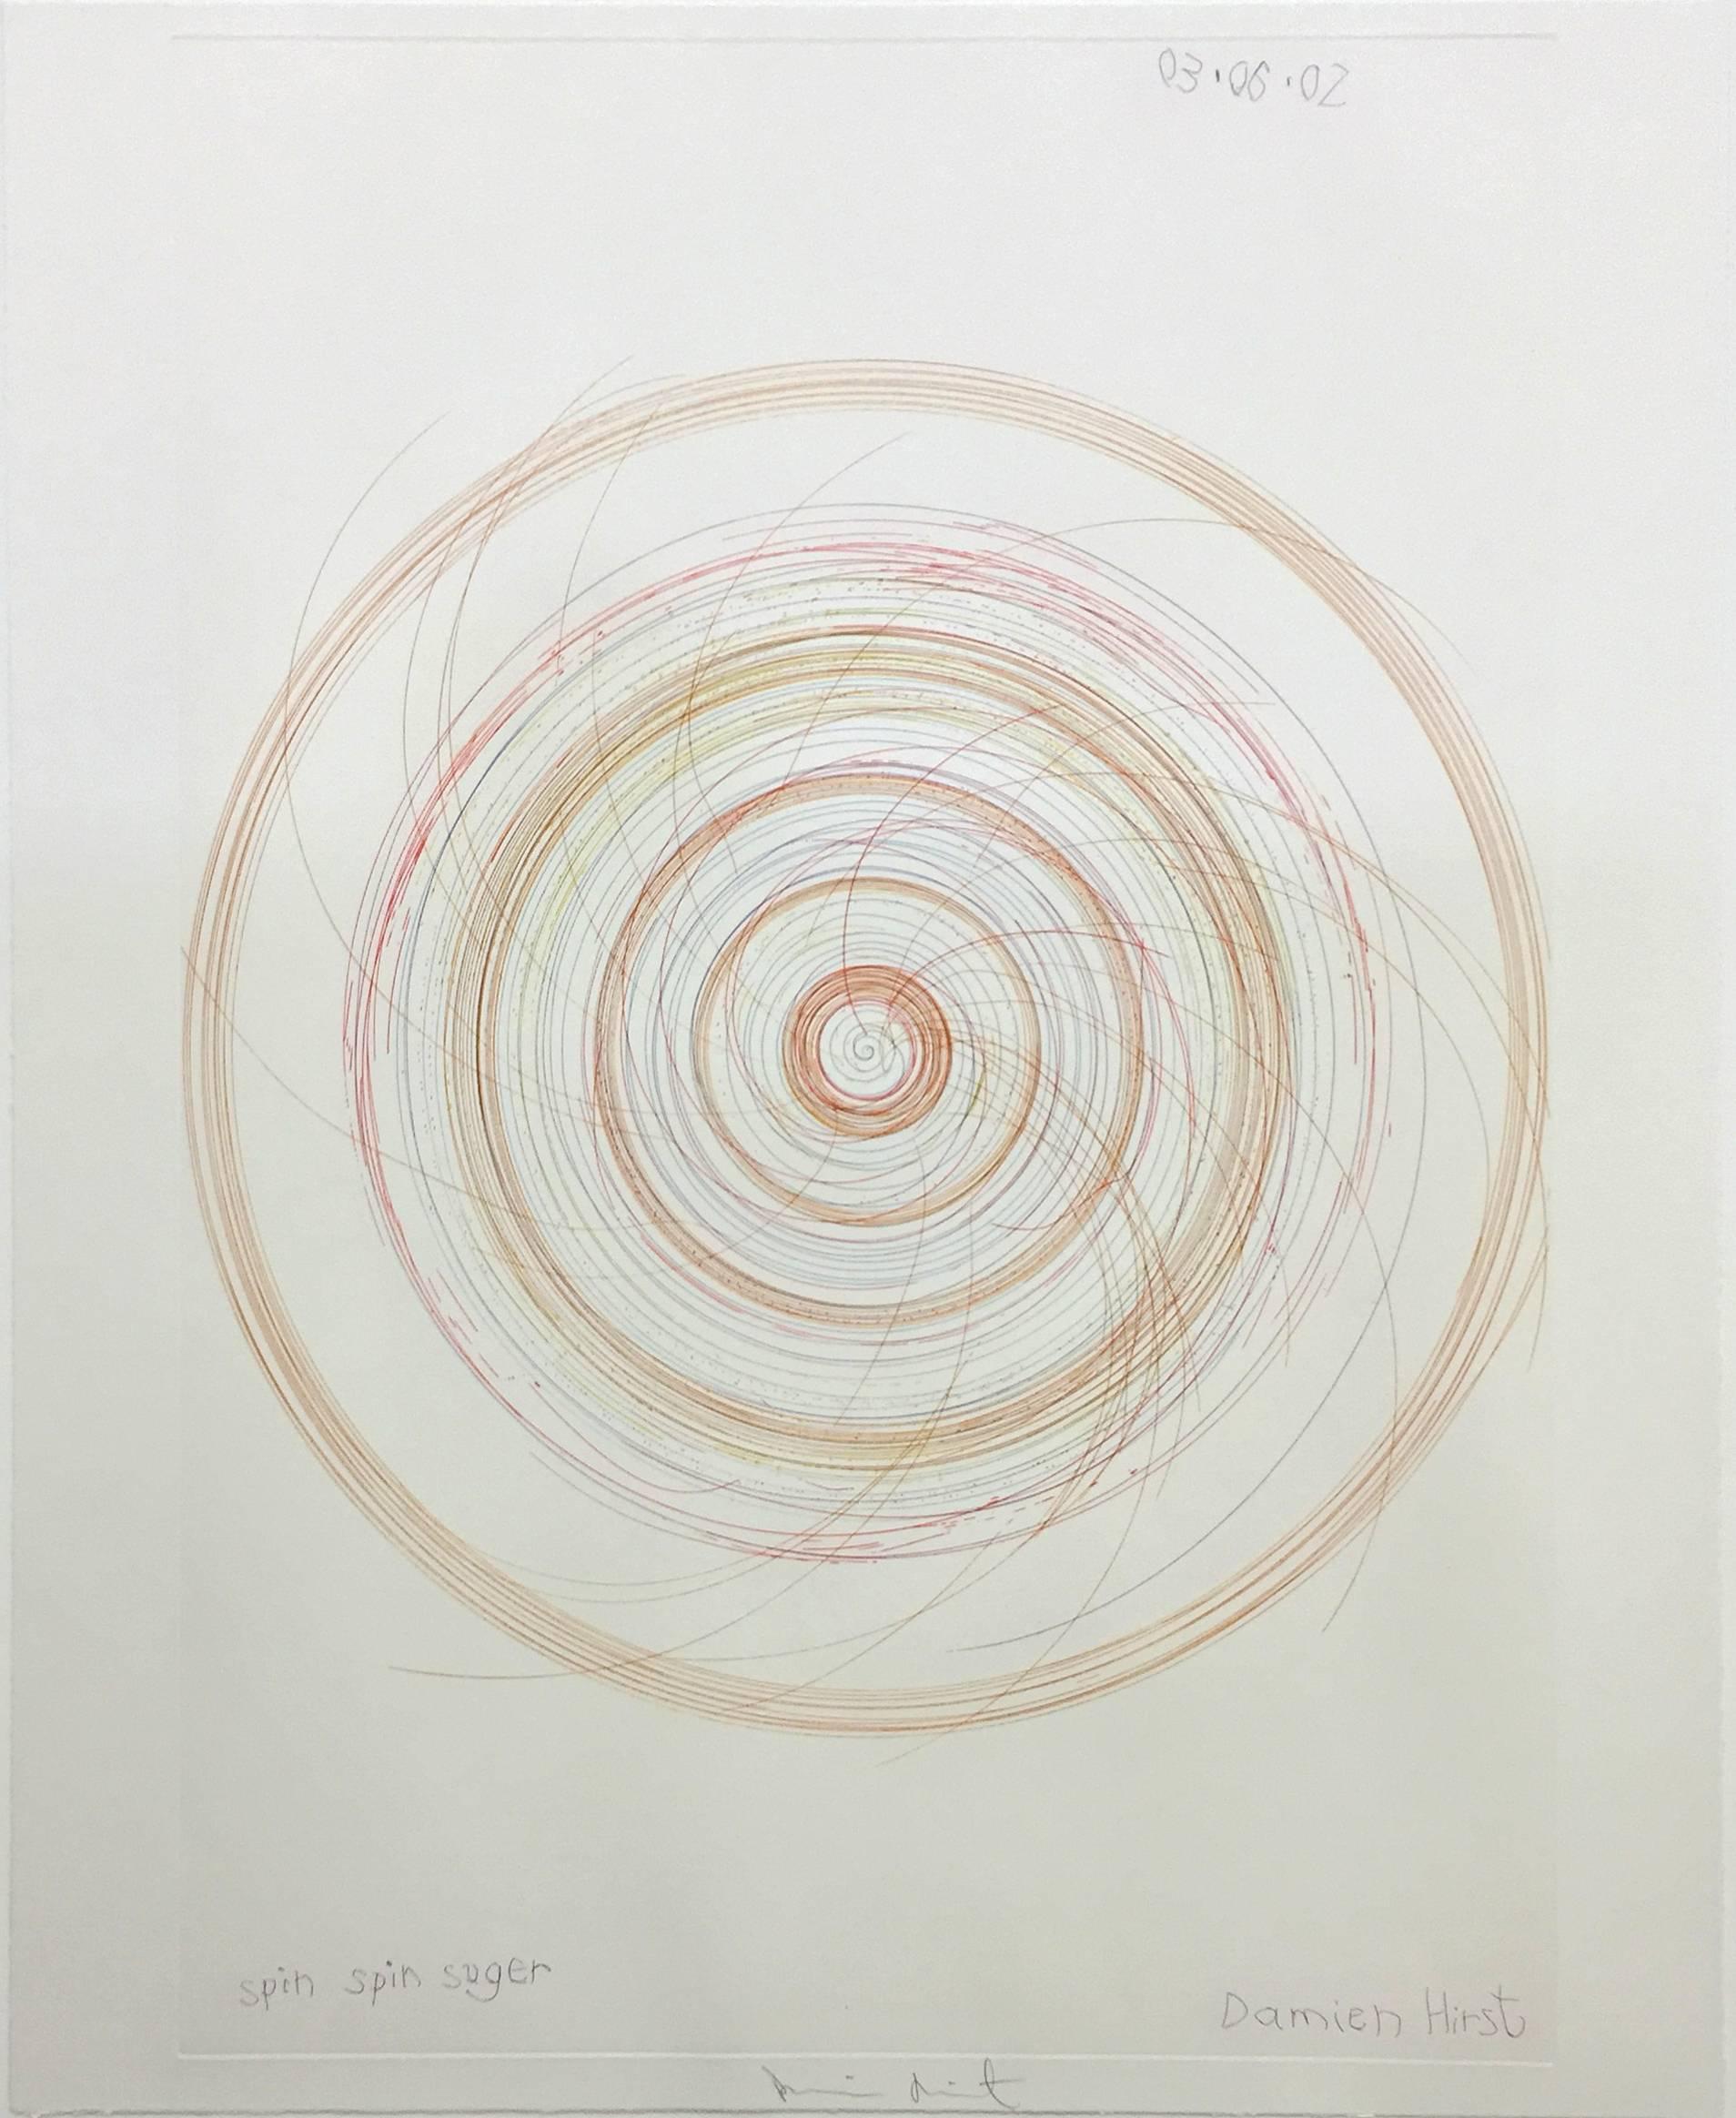 Damien Hirst Abstract Print - Spin, Spin, Sugar